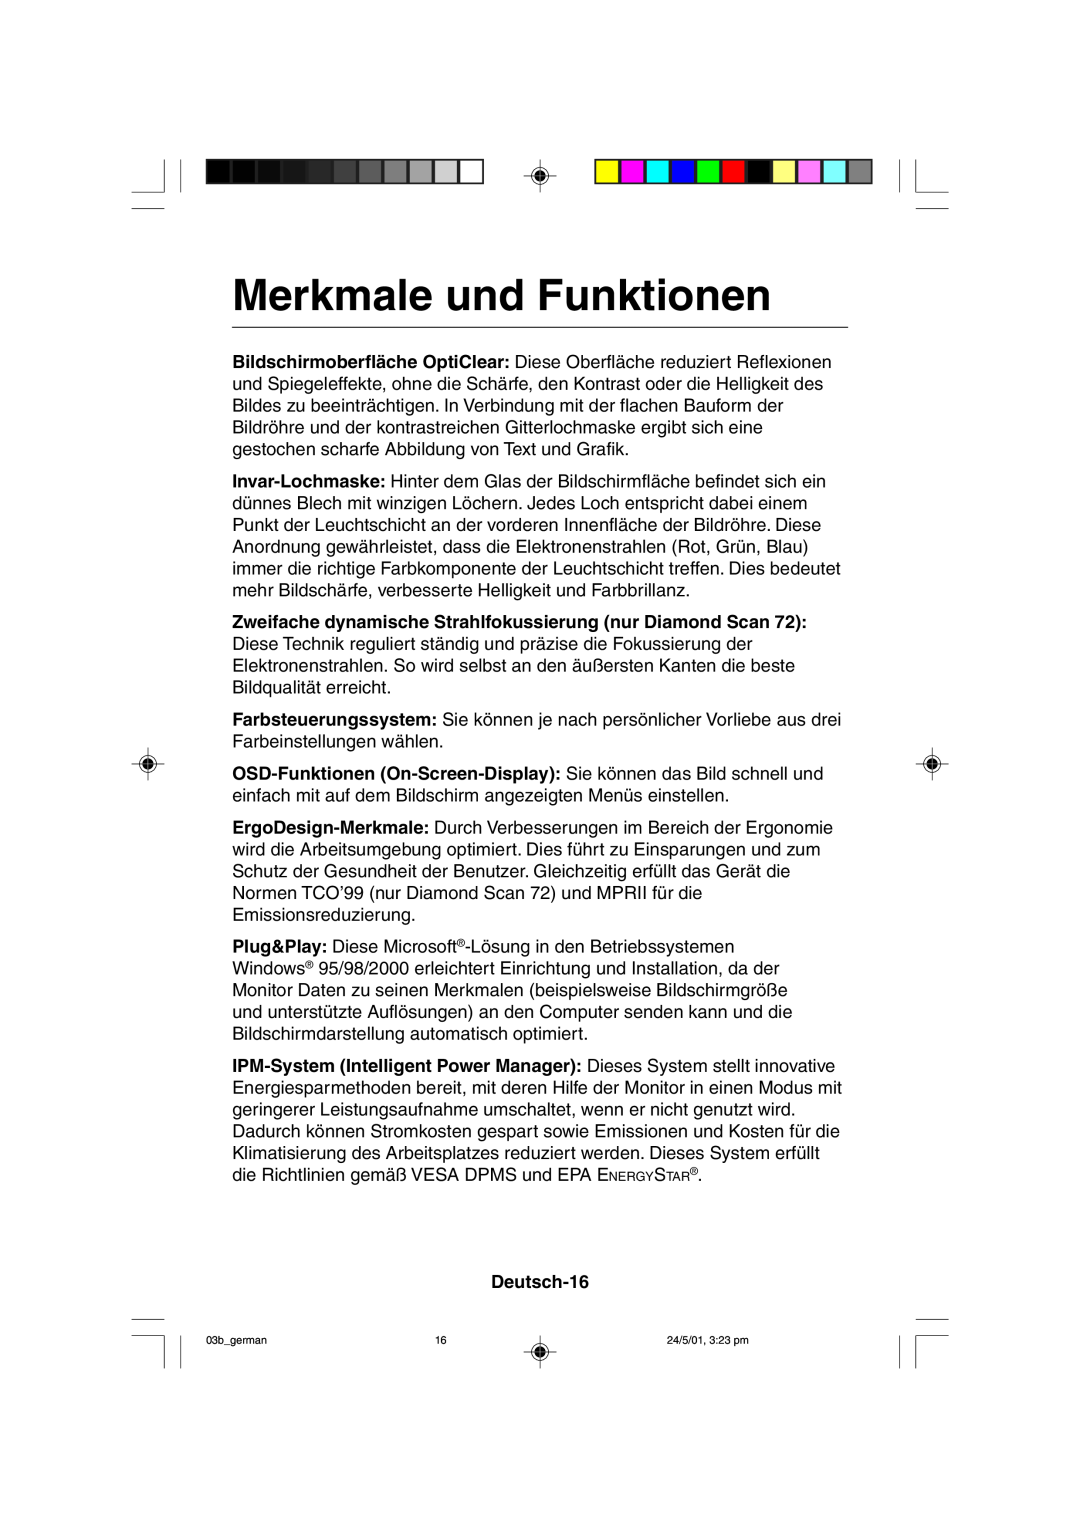 Mitsubishi Electronics M557 user manual Merkmale und Funktionen, Deutsch-16 